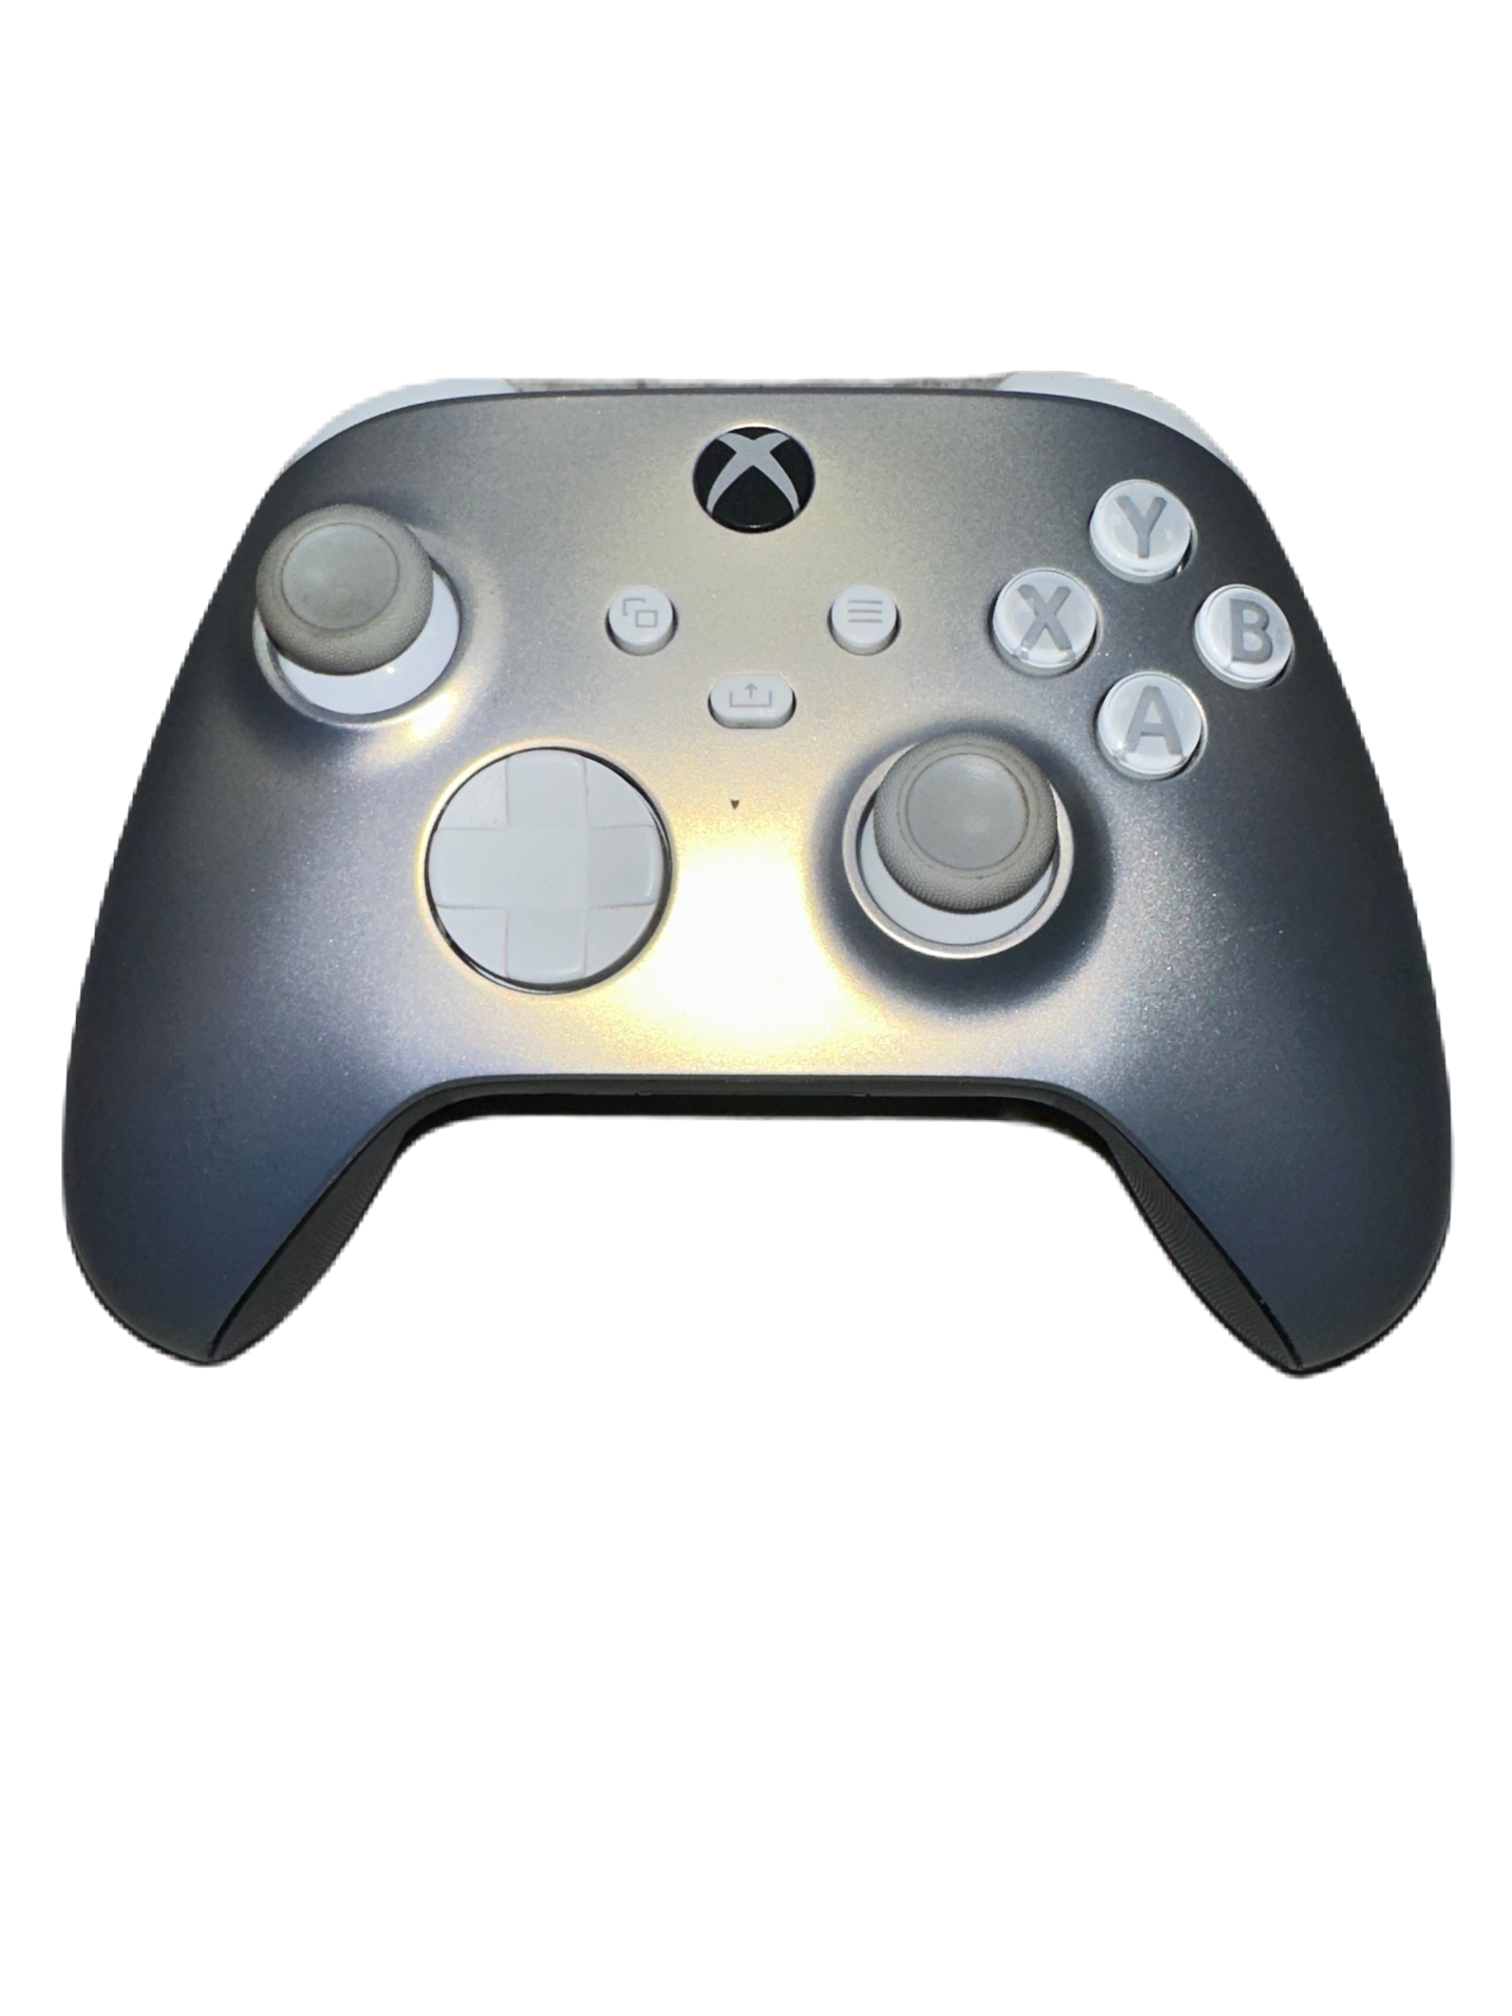 Xbox Series Controller - Silver/grey